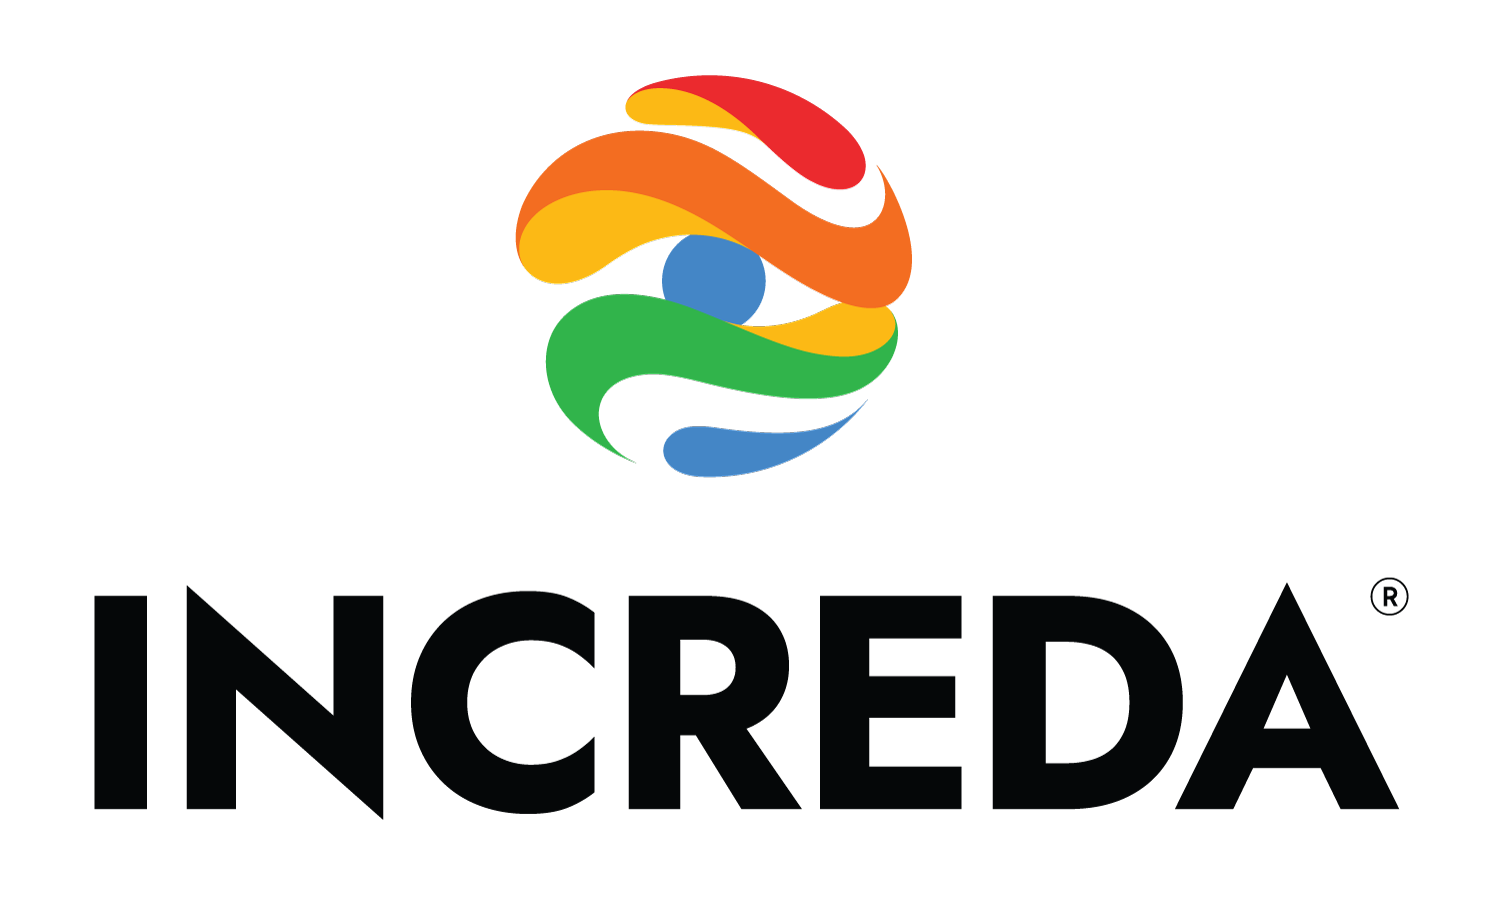 INCREDA.org